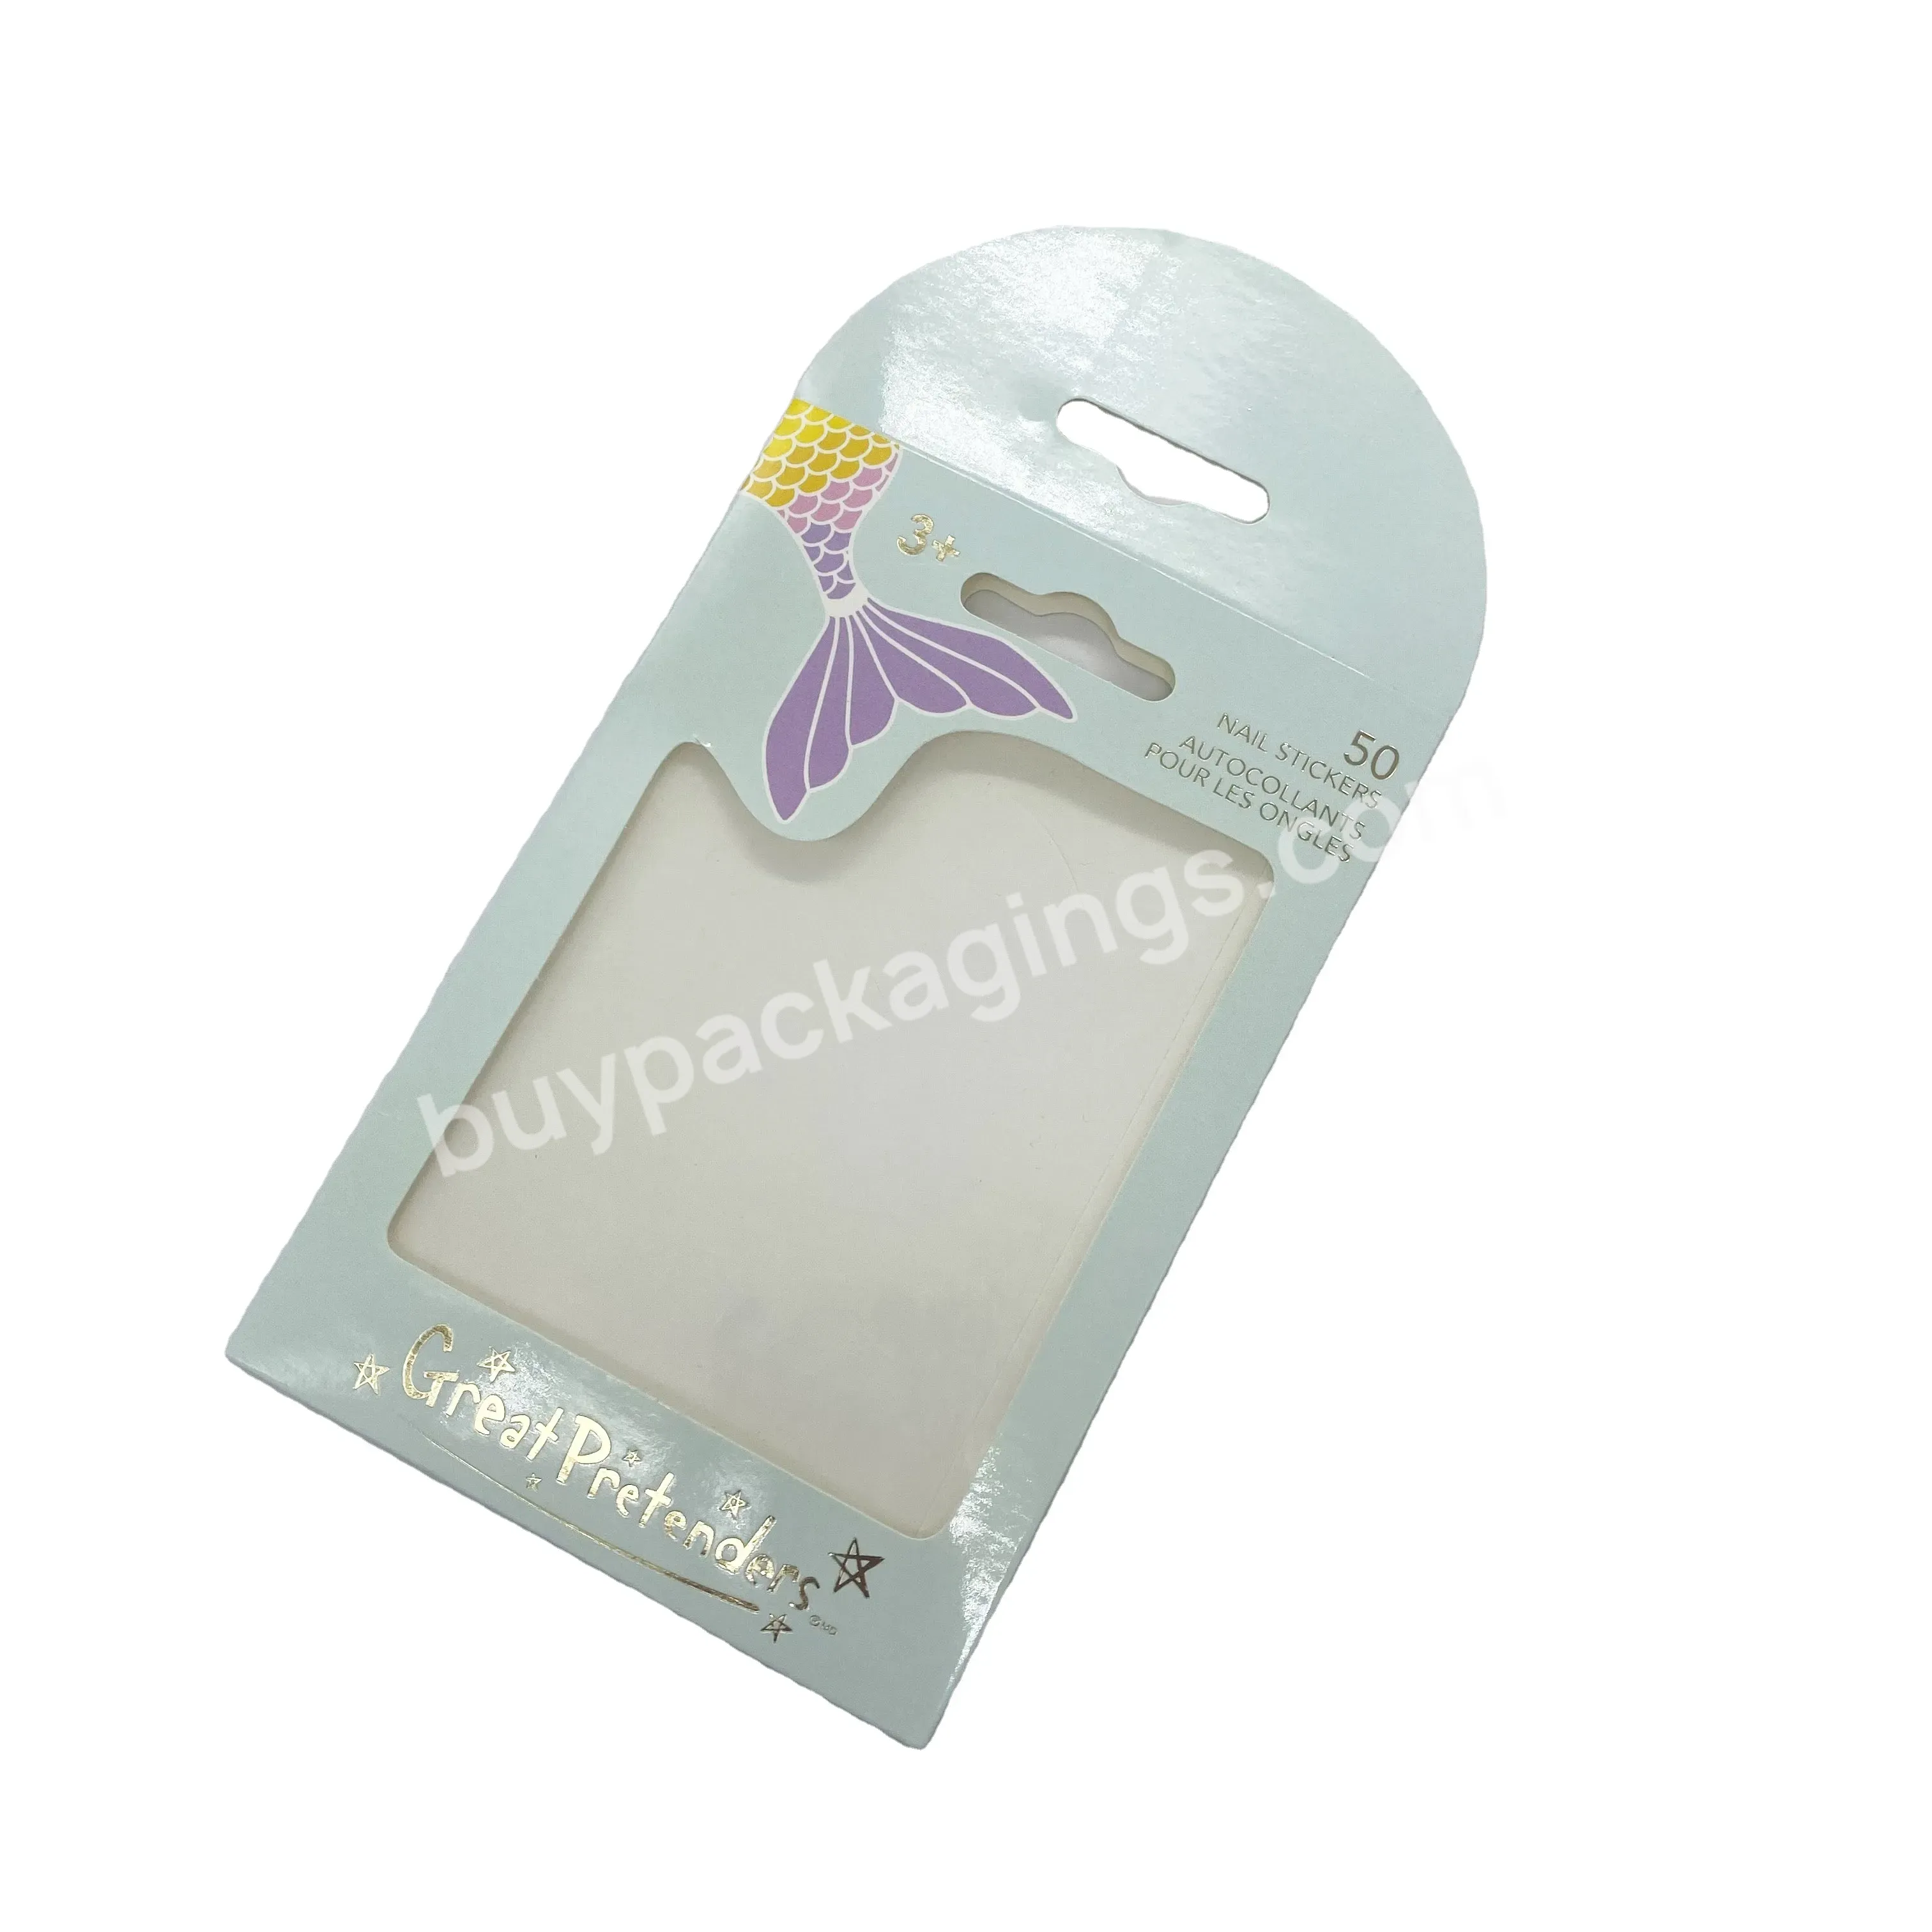 Custom Pastel Single Eyeshadow Refills Pan Photo Jewelry Packaging Paper Envelope With Window - Buy Envelope With Window,Packaging Paper Envelope,Photo Packaging Envelope.